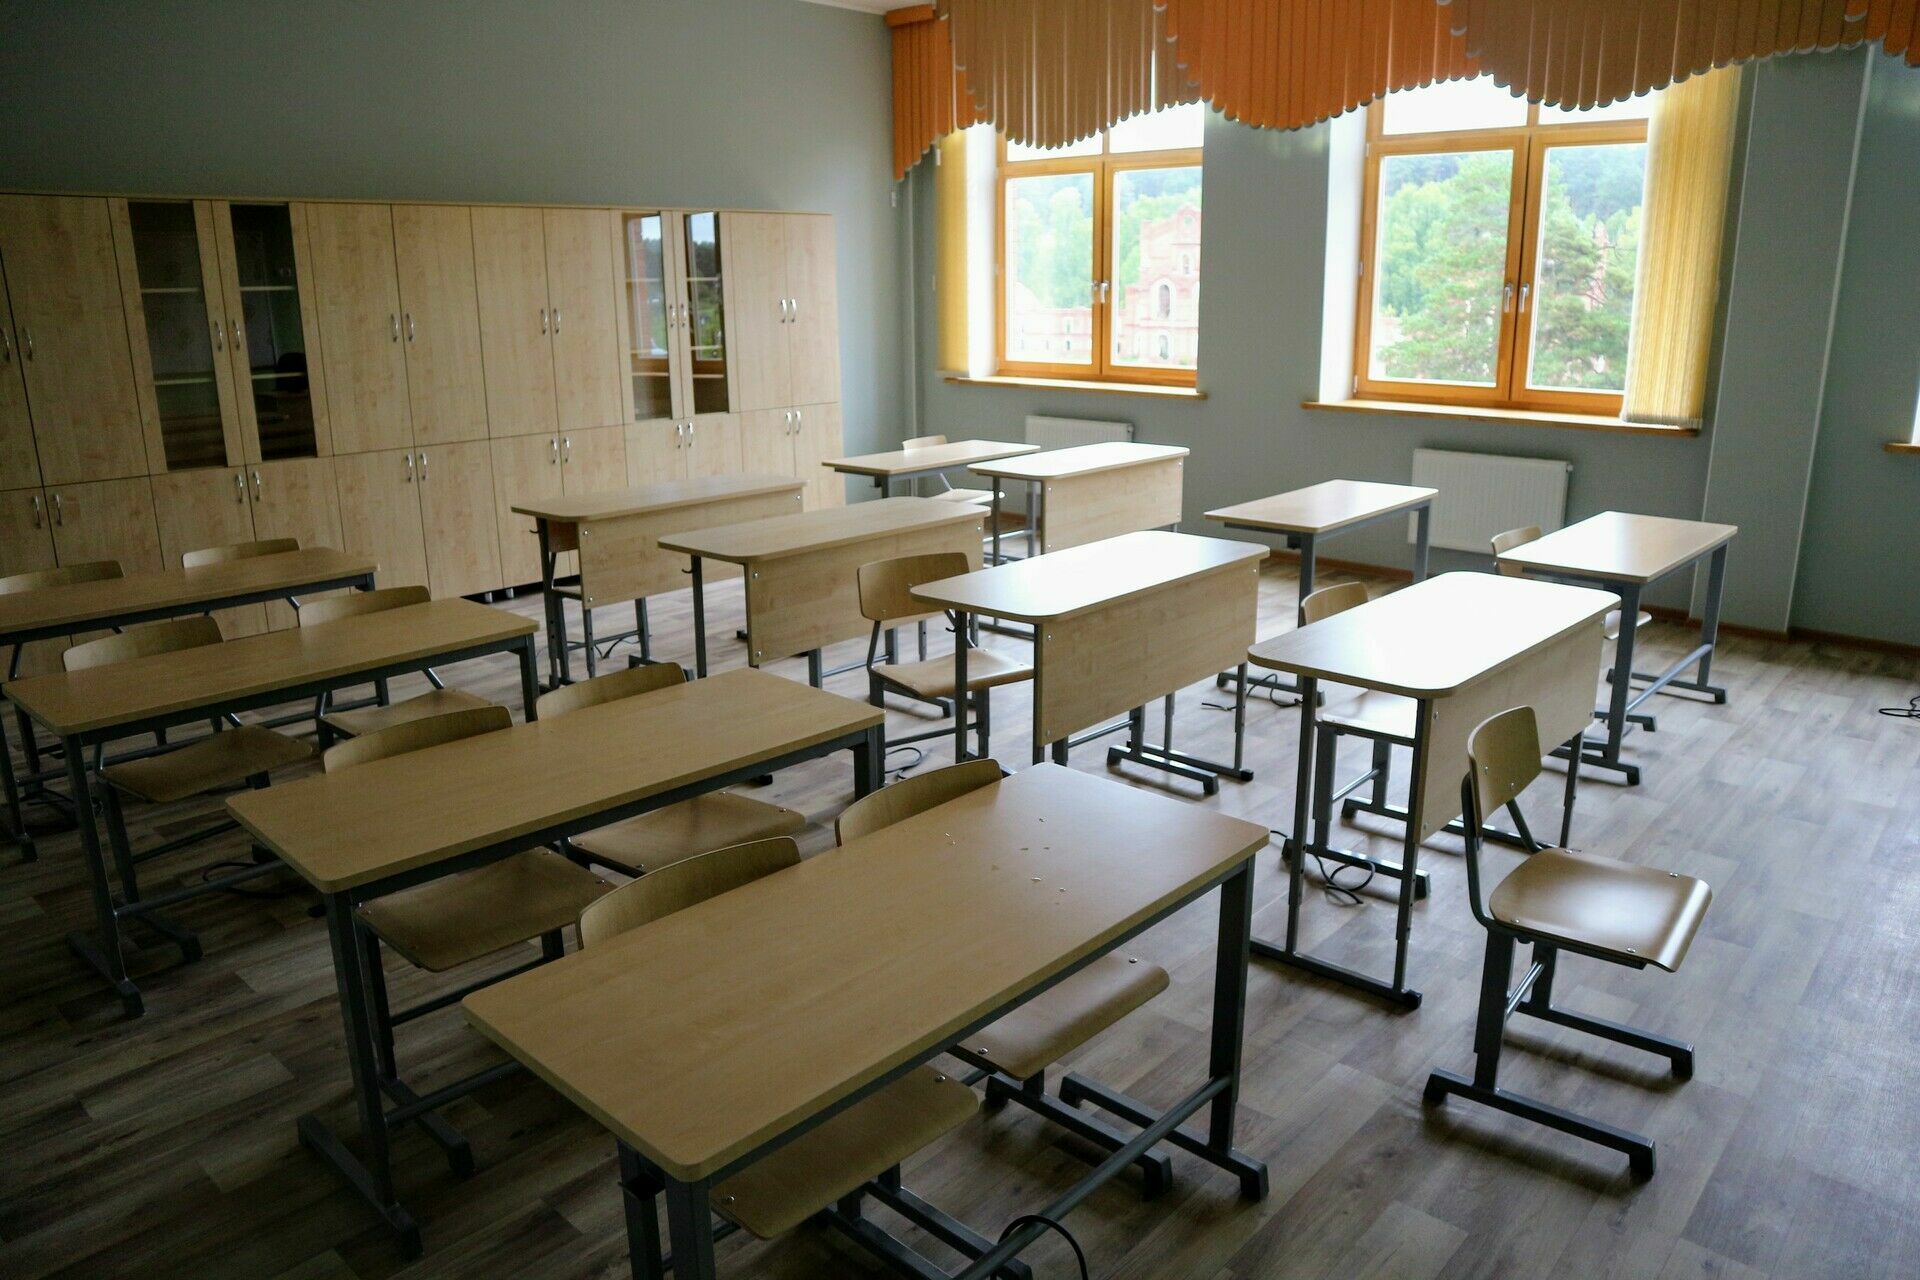 Меры безопасности усилили в школах Карелии после трагедии в Ижевске